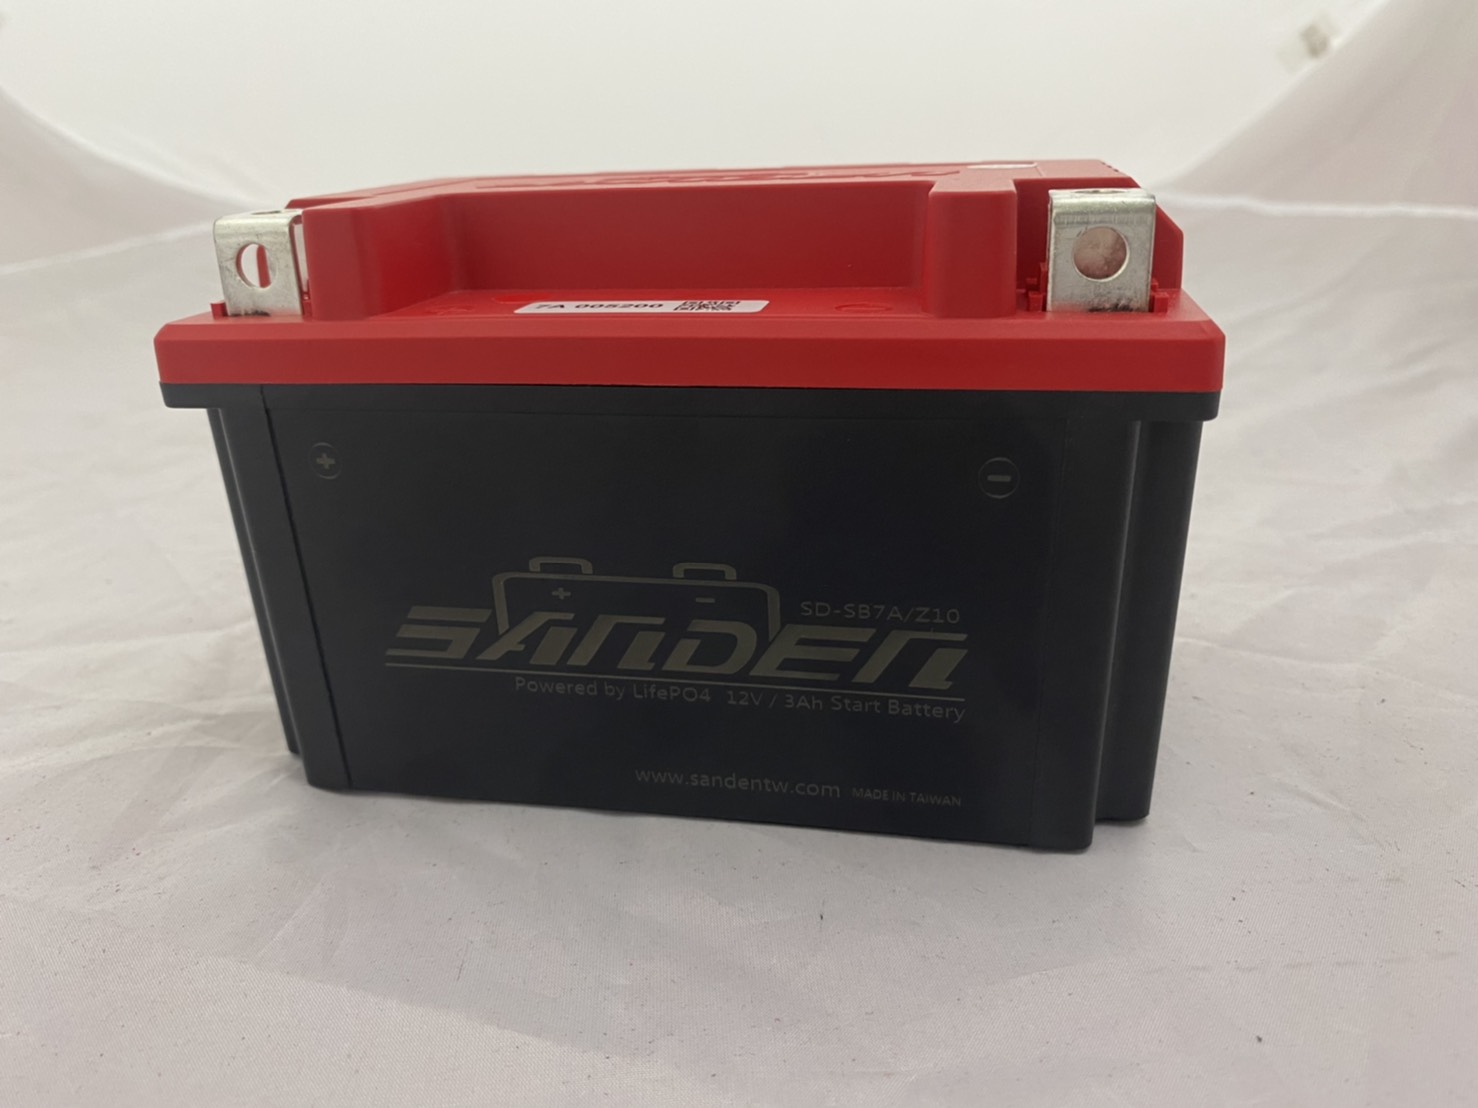 紅色閃電 SD-SB7A 7A 鋰鐵電池